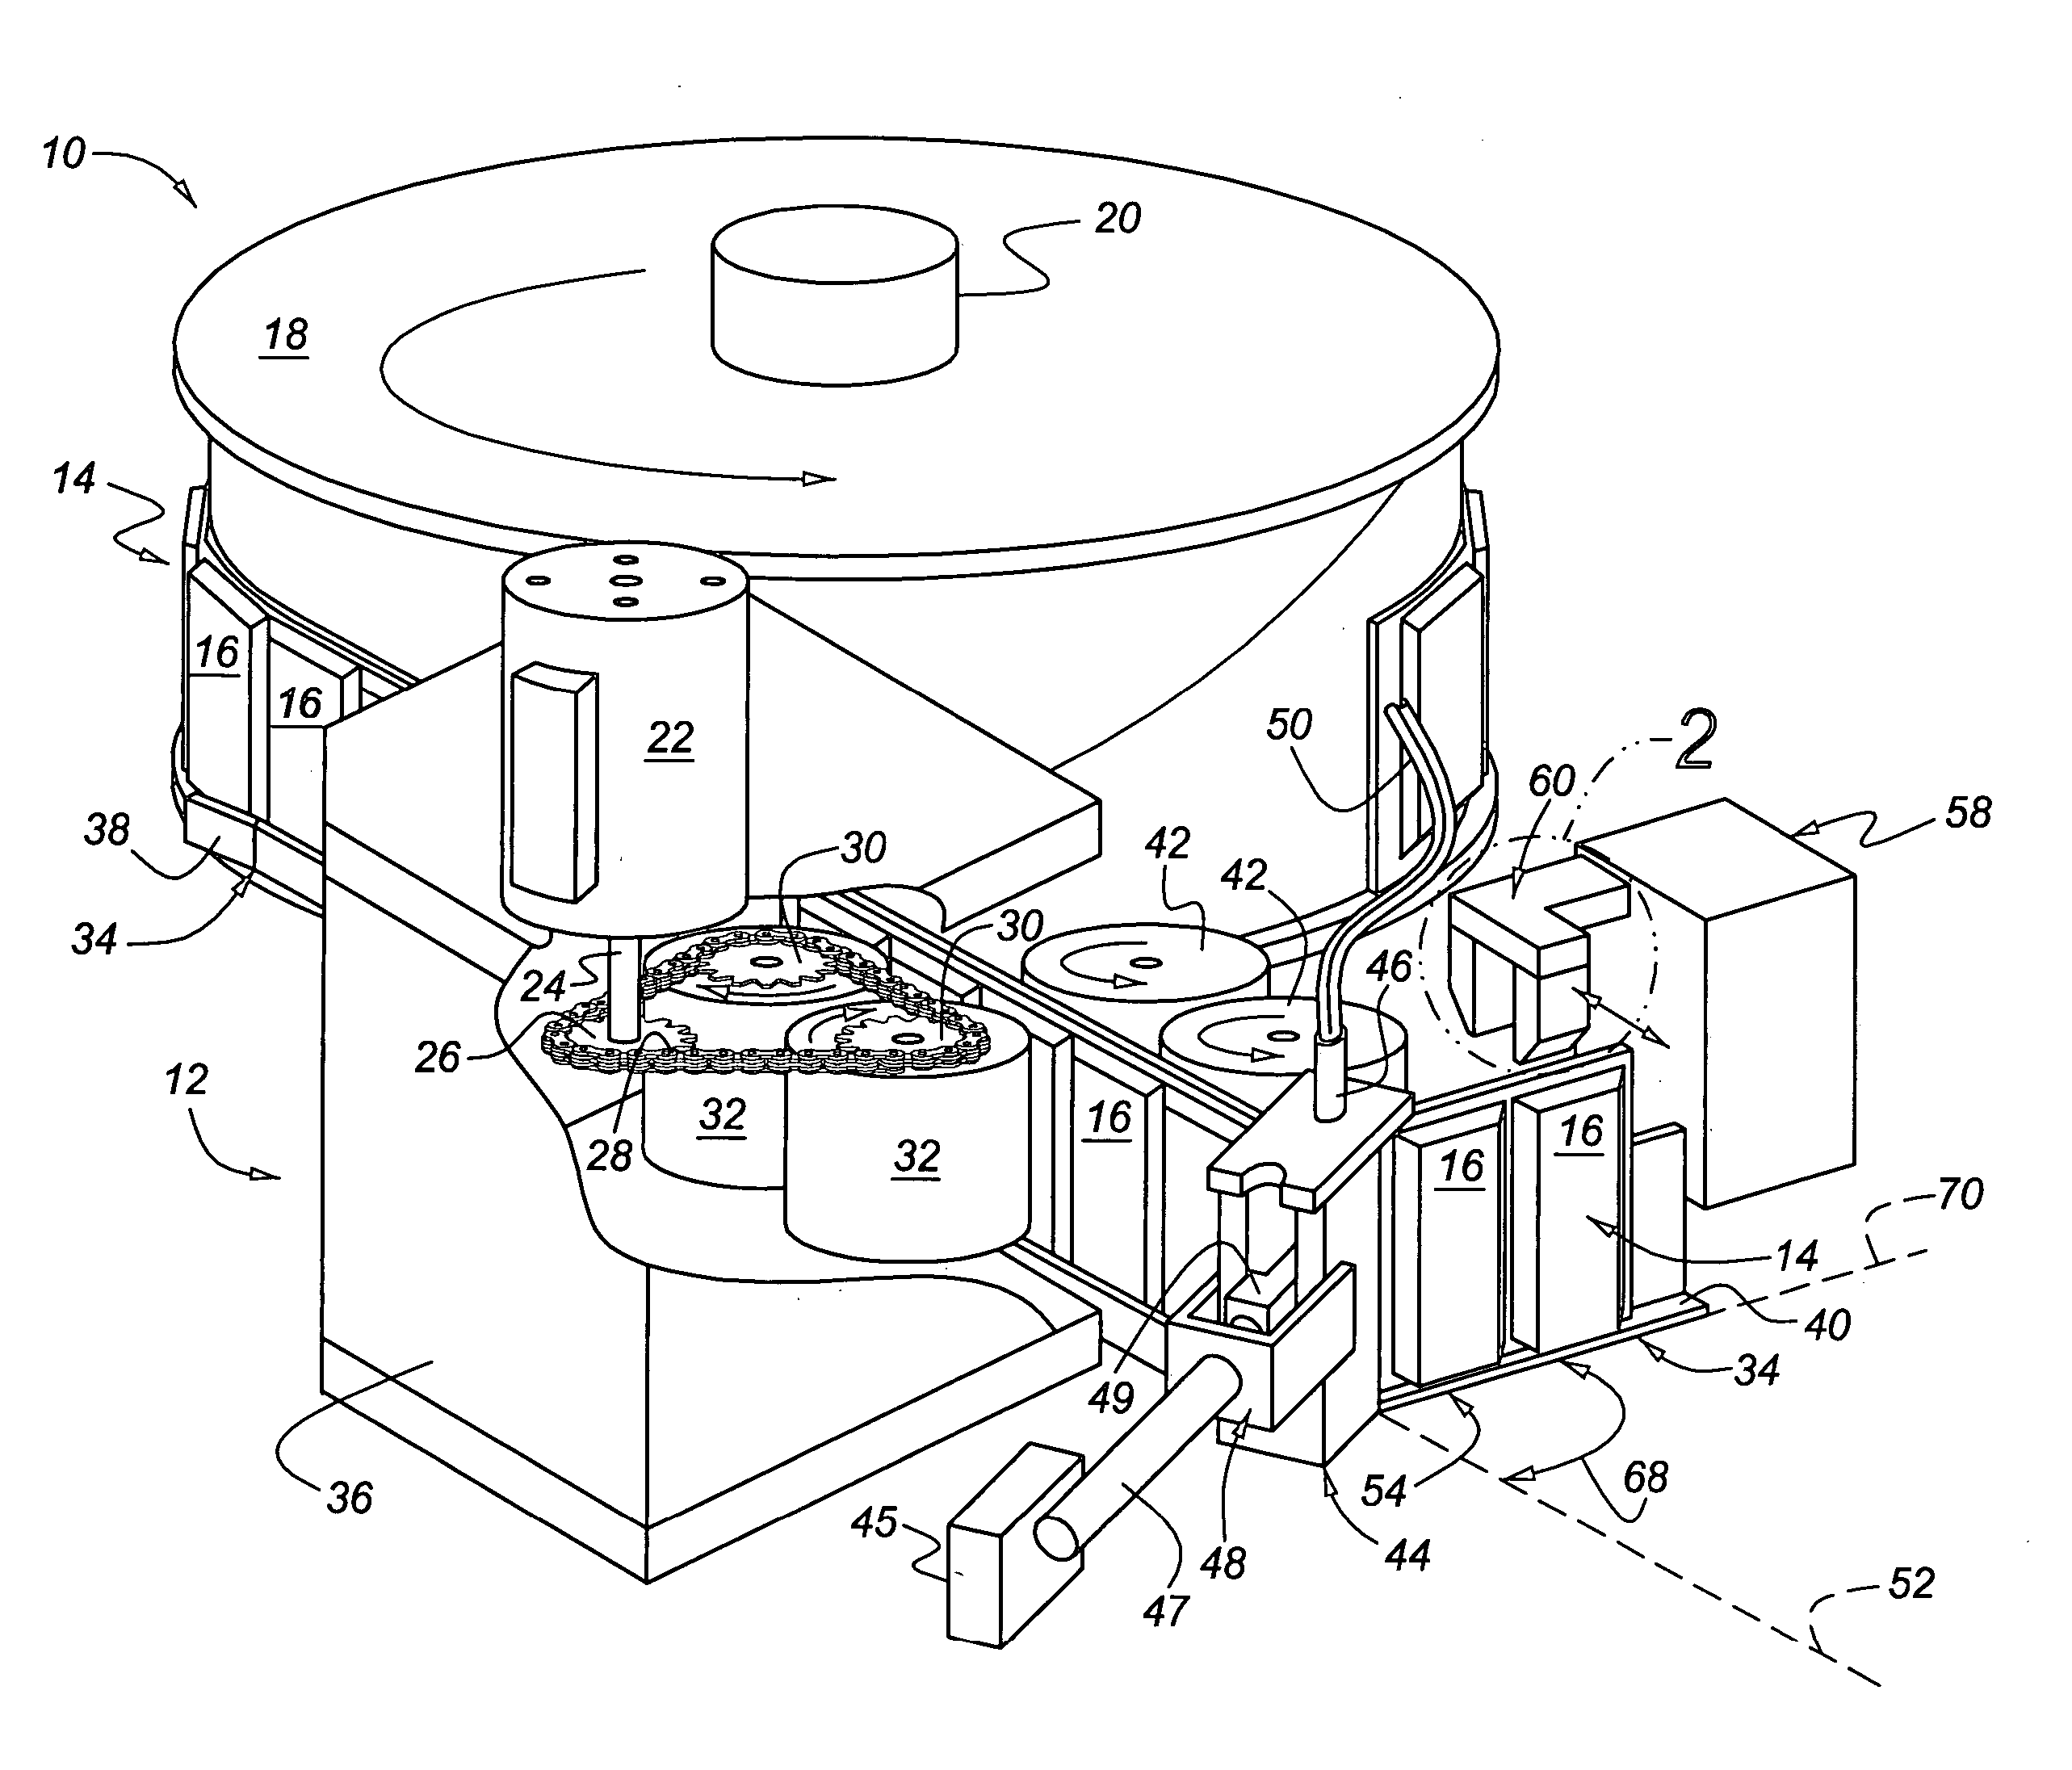 Adhesive wheel weight dispensing apparatus